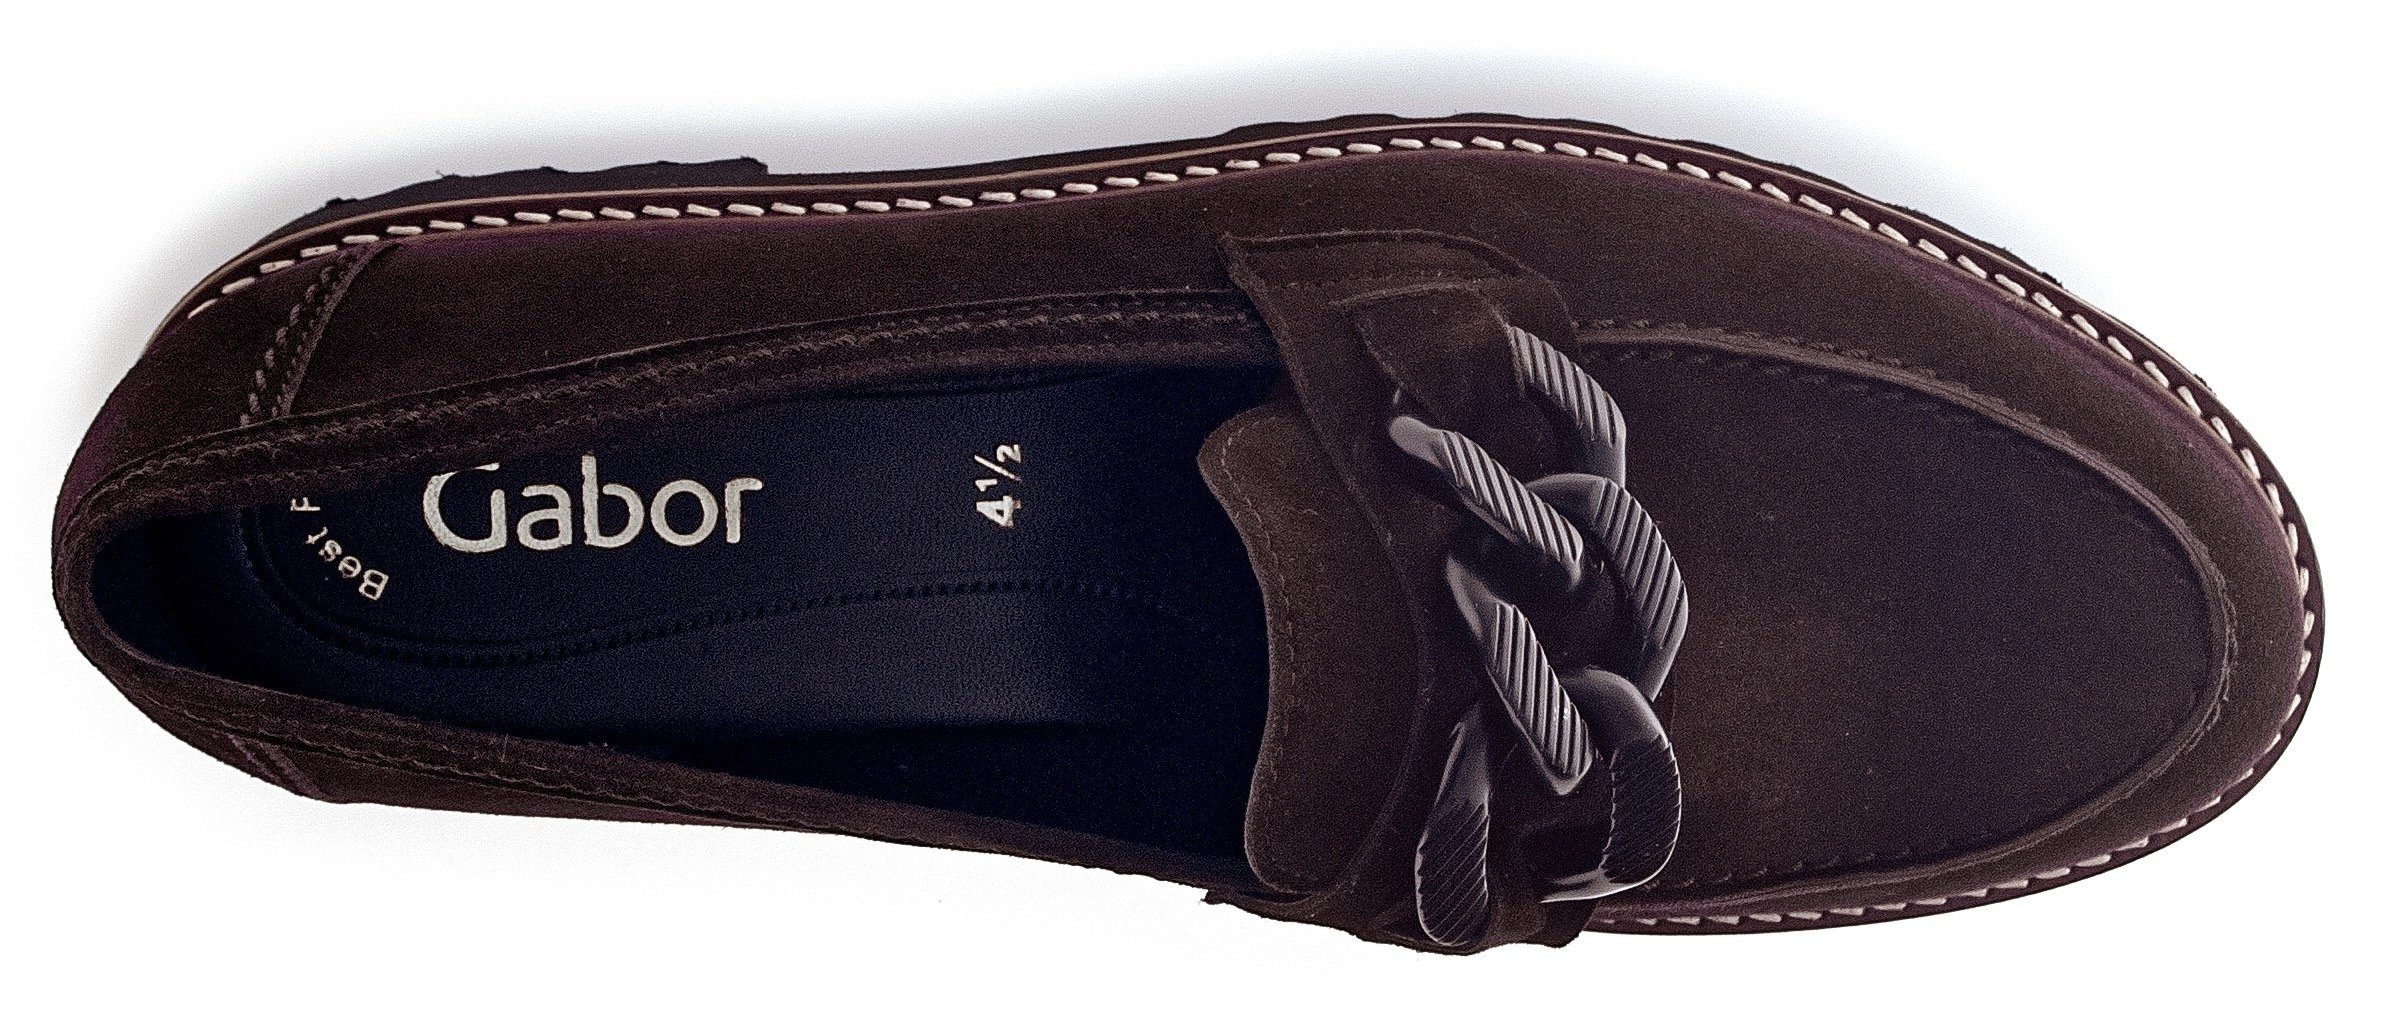 Slipper mit Fitting-Ausstattung Gabor Best dunkelbraun-schwarz